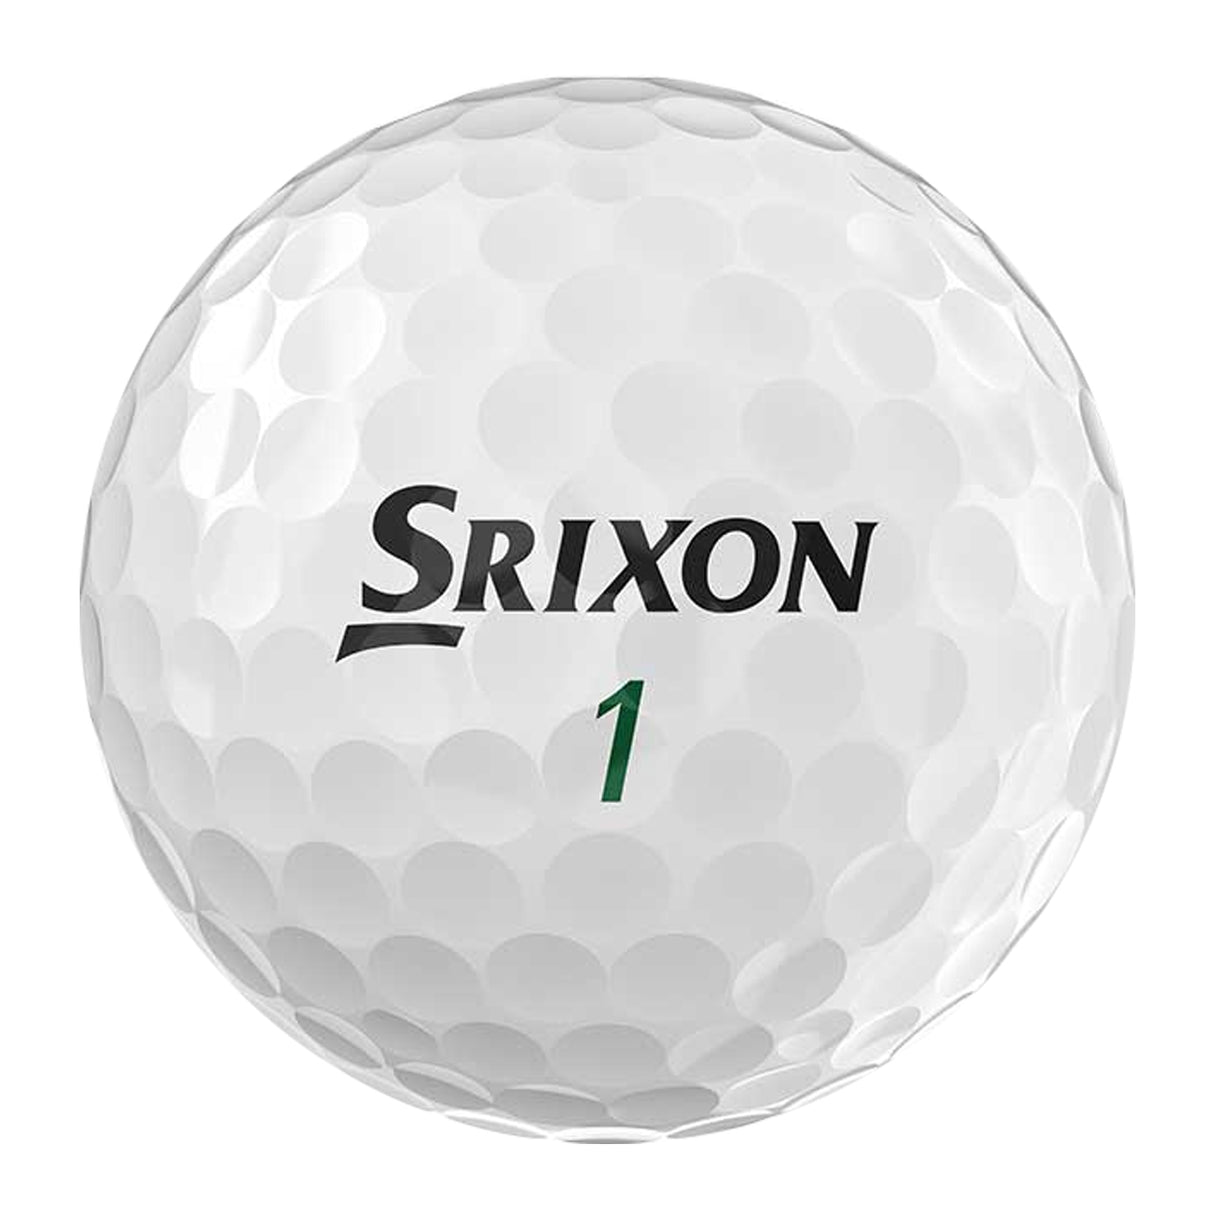 Srixon Soft Feel Golf Balls, 2 Dozen